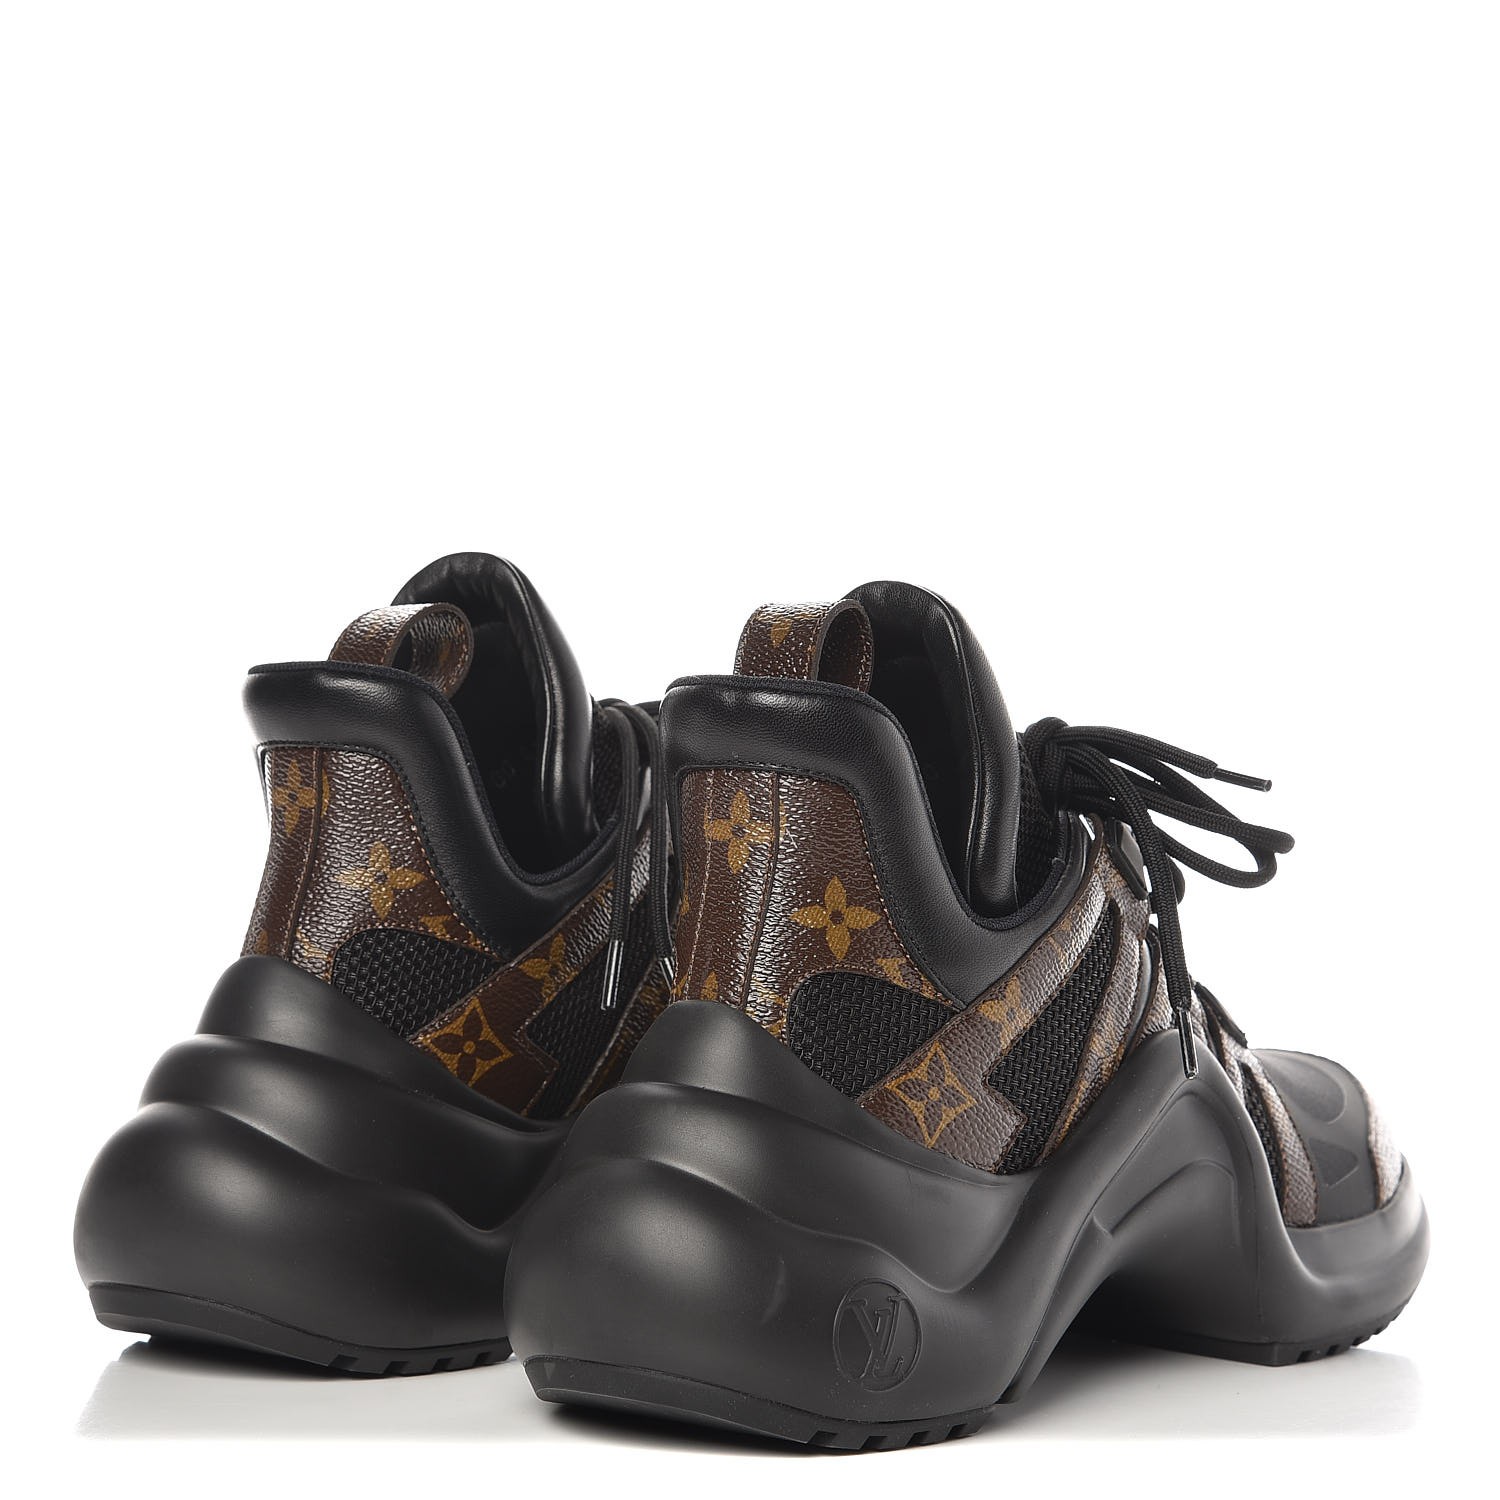 LOUIS VUITTON Patent Monogram LV Archlight Sneakers 41 Noir Black 272399